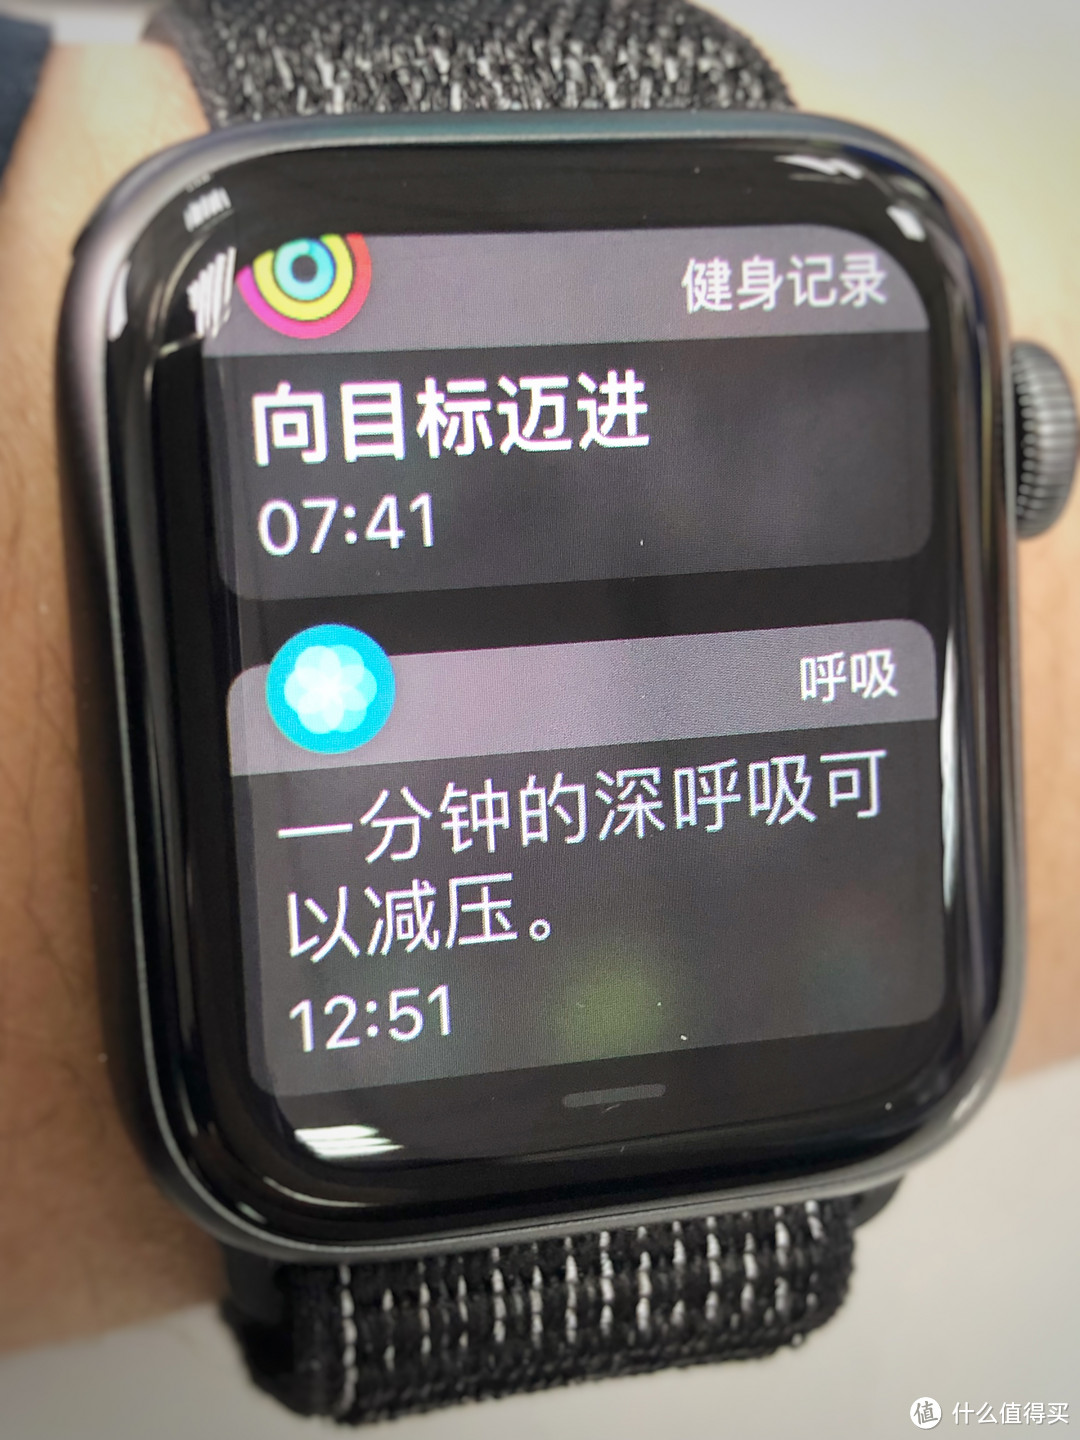 我的苹果三件套日常及Apple Watch S4使用技巧分享